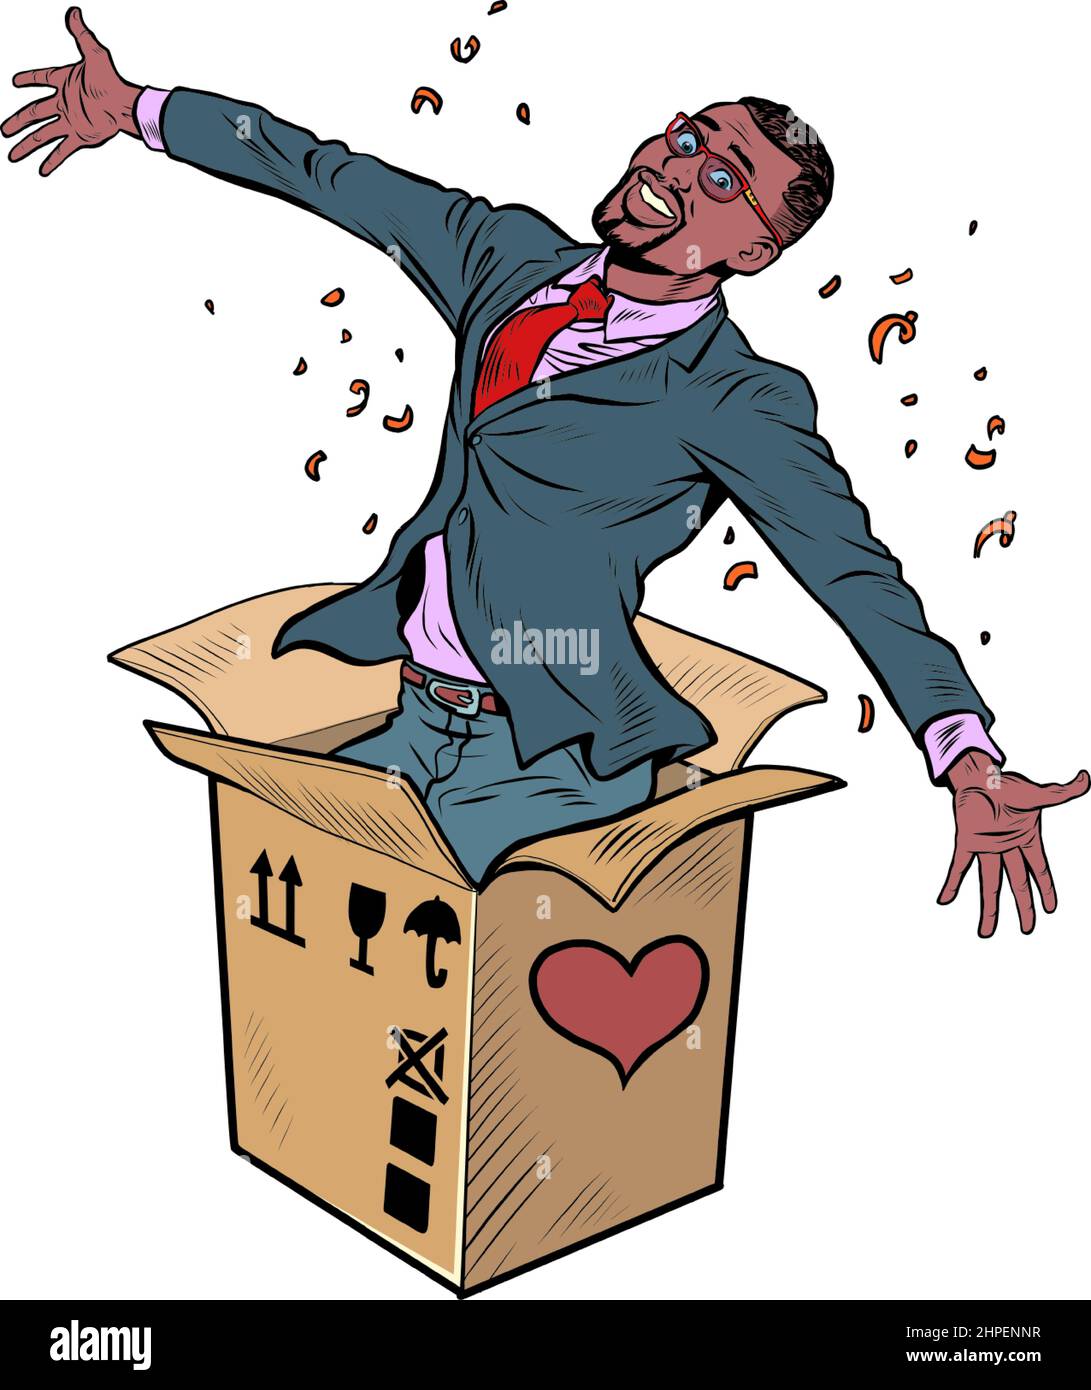 Bräutigam afrikanischen Mann Geschäftsmann Box valentine Überraschung Gruß, Liebe Romantik isolieren auf einem weißen Hintergrund Stock Vektor